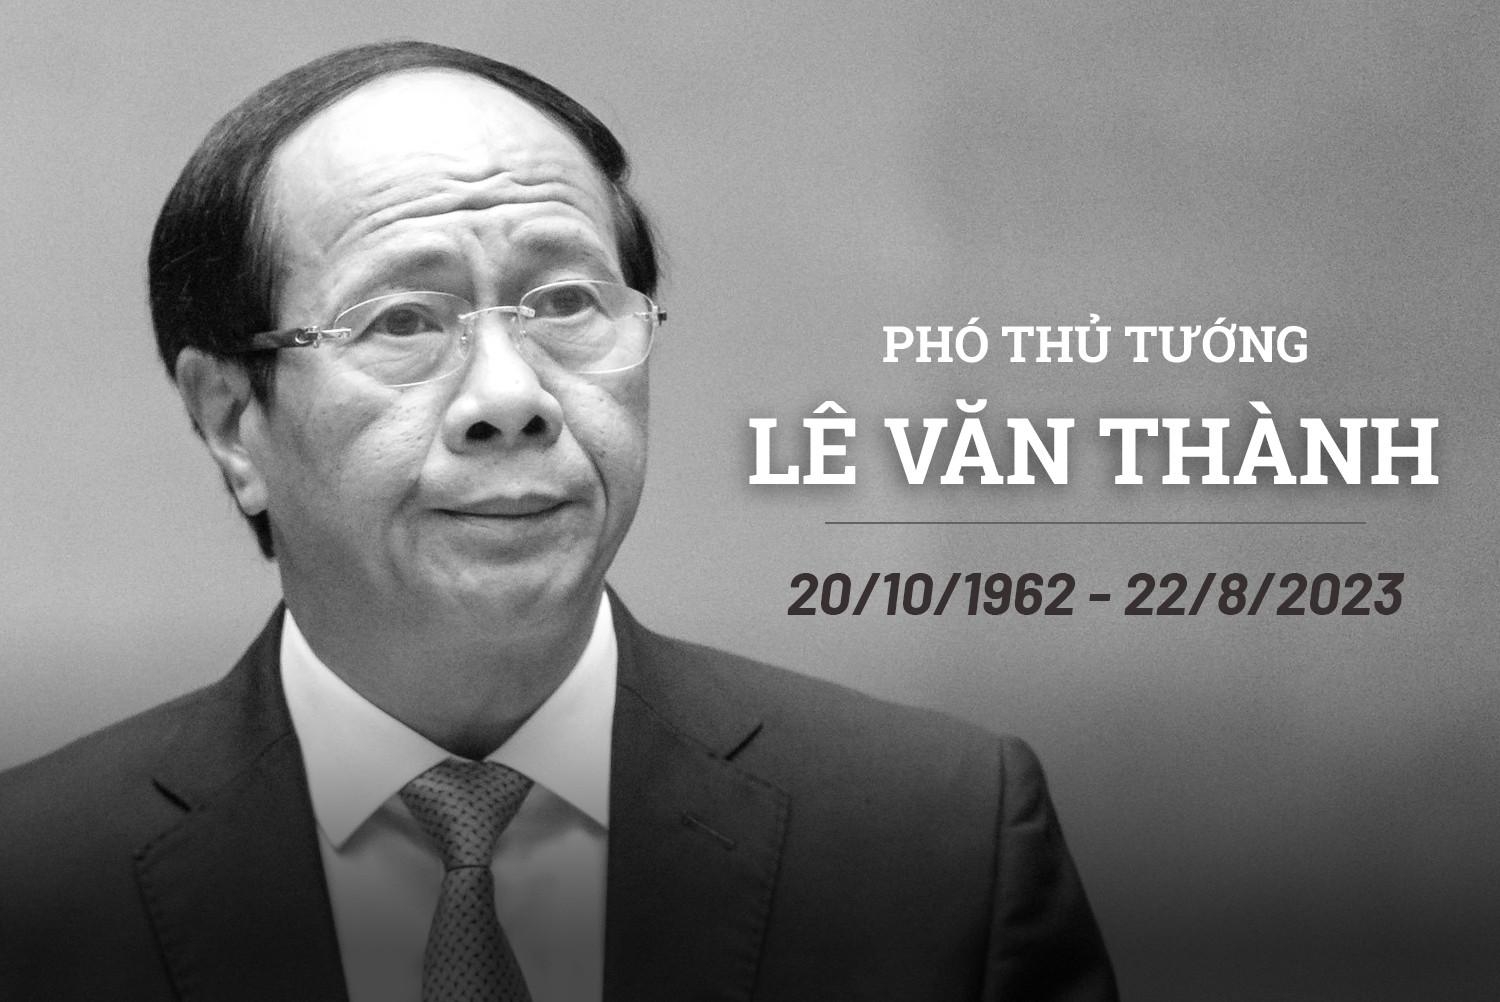 Phó Thủ tướng Lê Văn Thành hưởng dương 61 tuổi